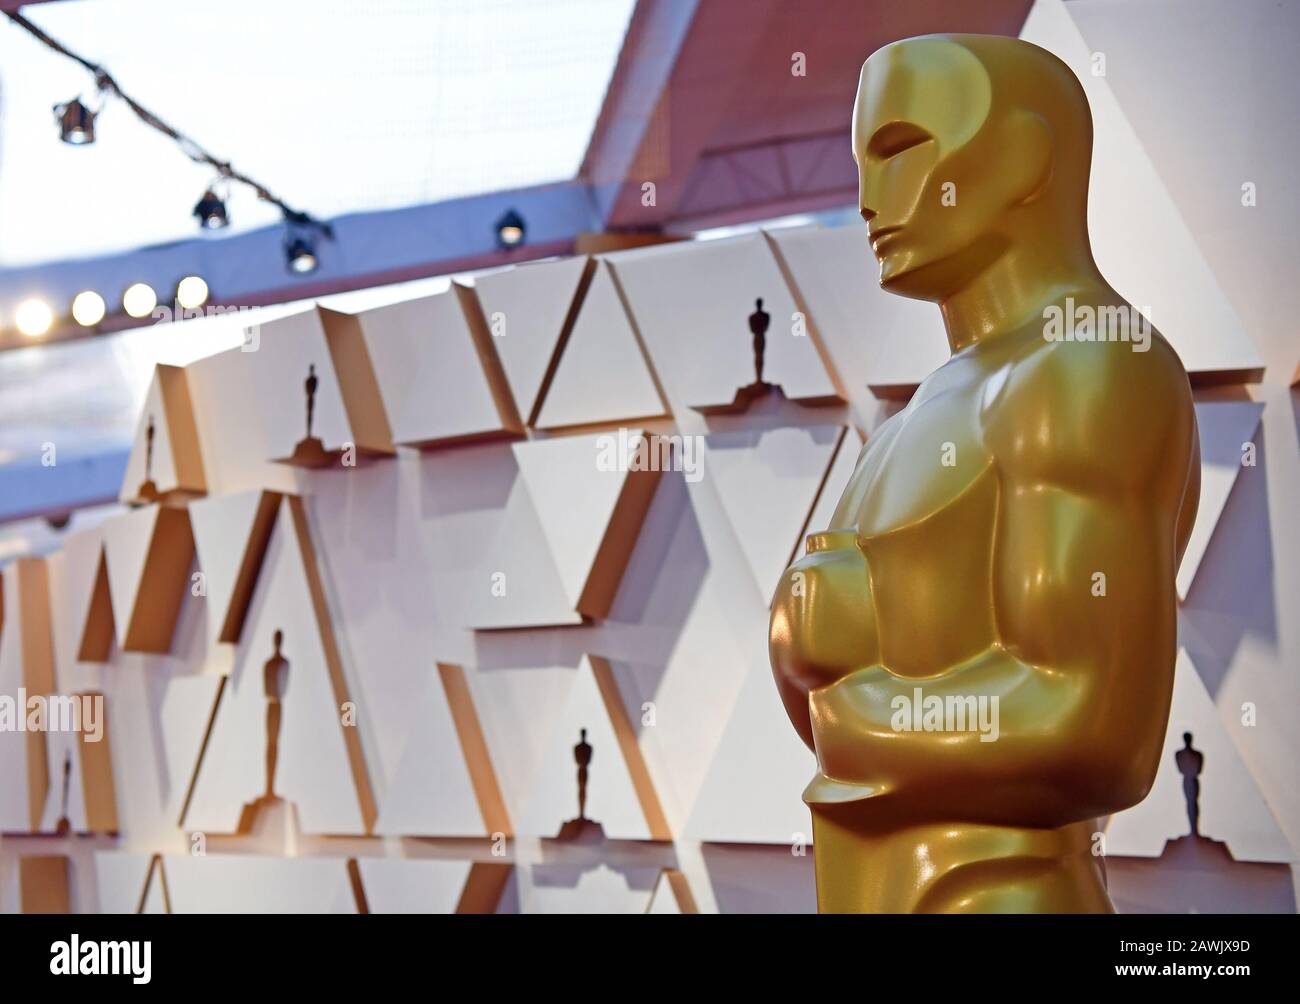 Los Angeles, Stati Uniti. 8th Feb, 2020. Una statua di Oscar viene vista fuori dal Dolby Theatre durante i preparativi per i 92nd Academy Awards a Hollywood, Los Angeles, Stati Uniti, l'8 febbraio 2020. Credito: Li Rui/Xinhua/Alamy Live News Foto Stock